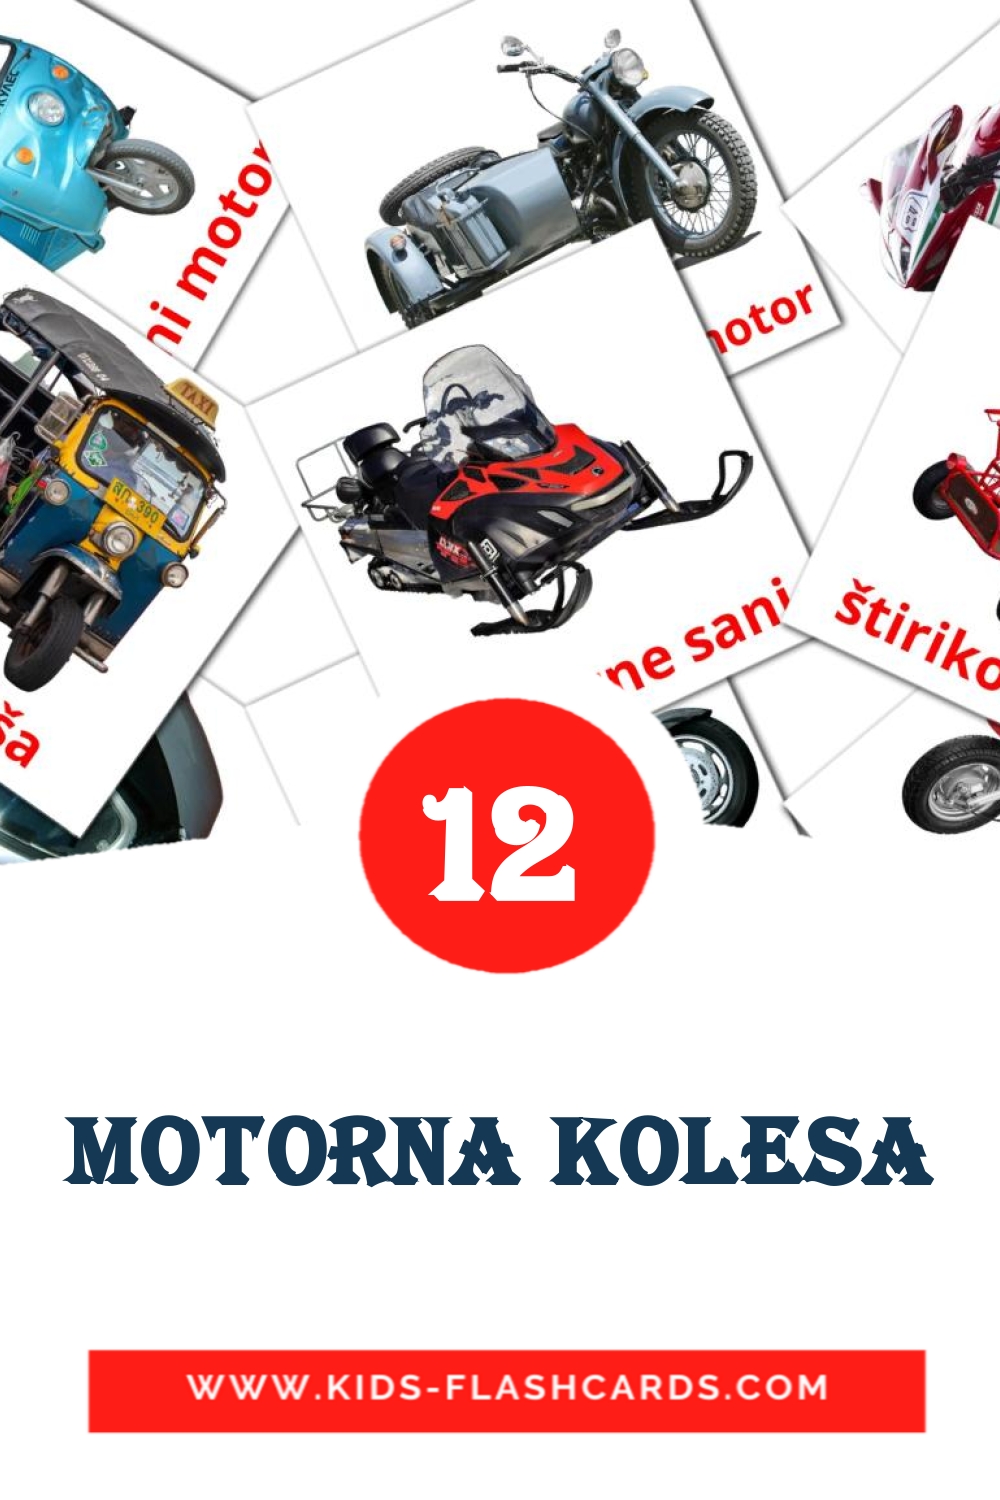 Motorna kolesa на словенском для Детского Сада (14 карточек)